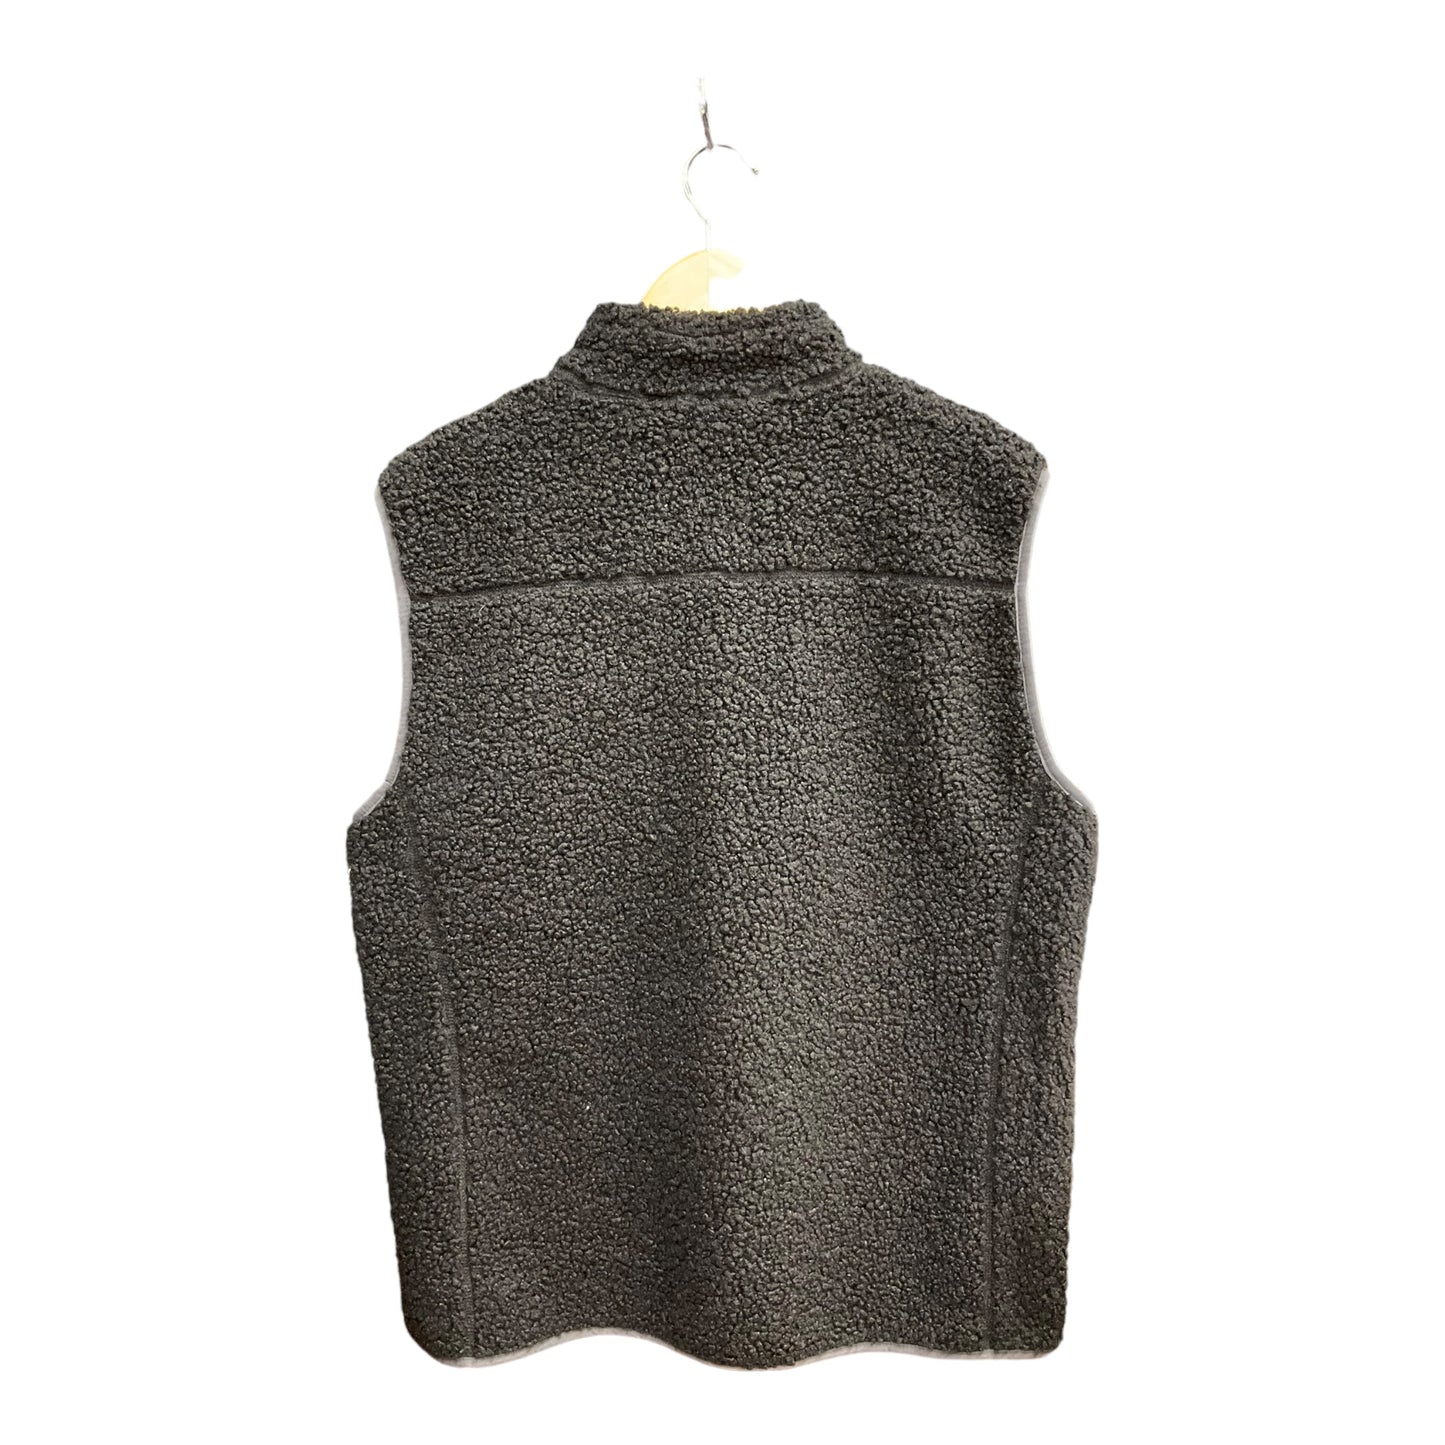 Vest Fleece By Telluride  Size: L